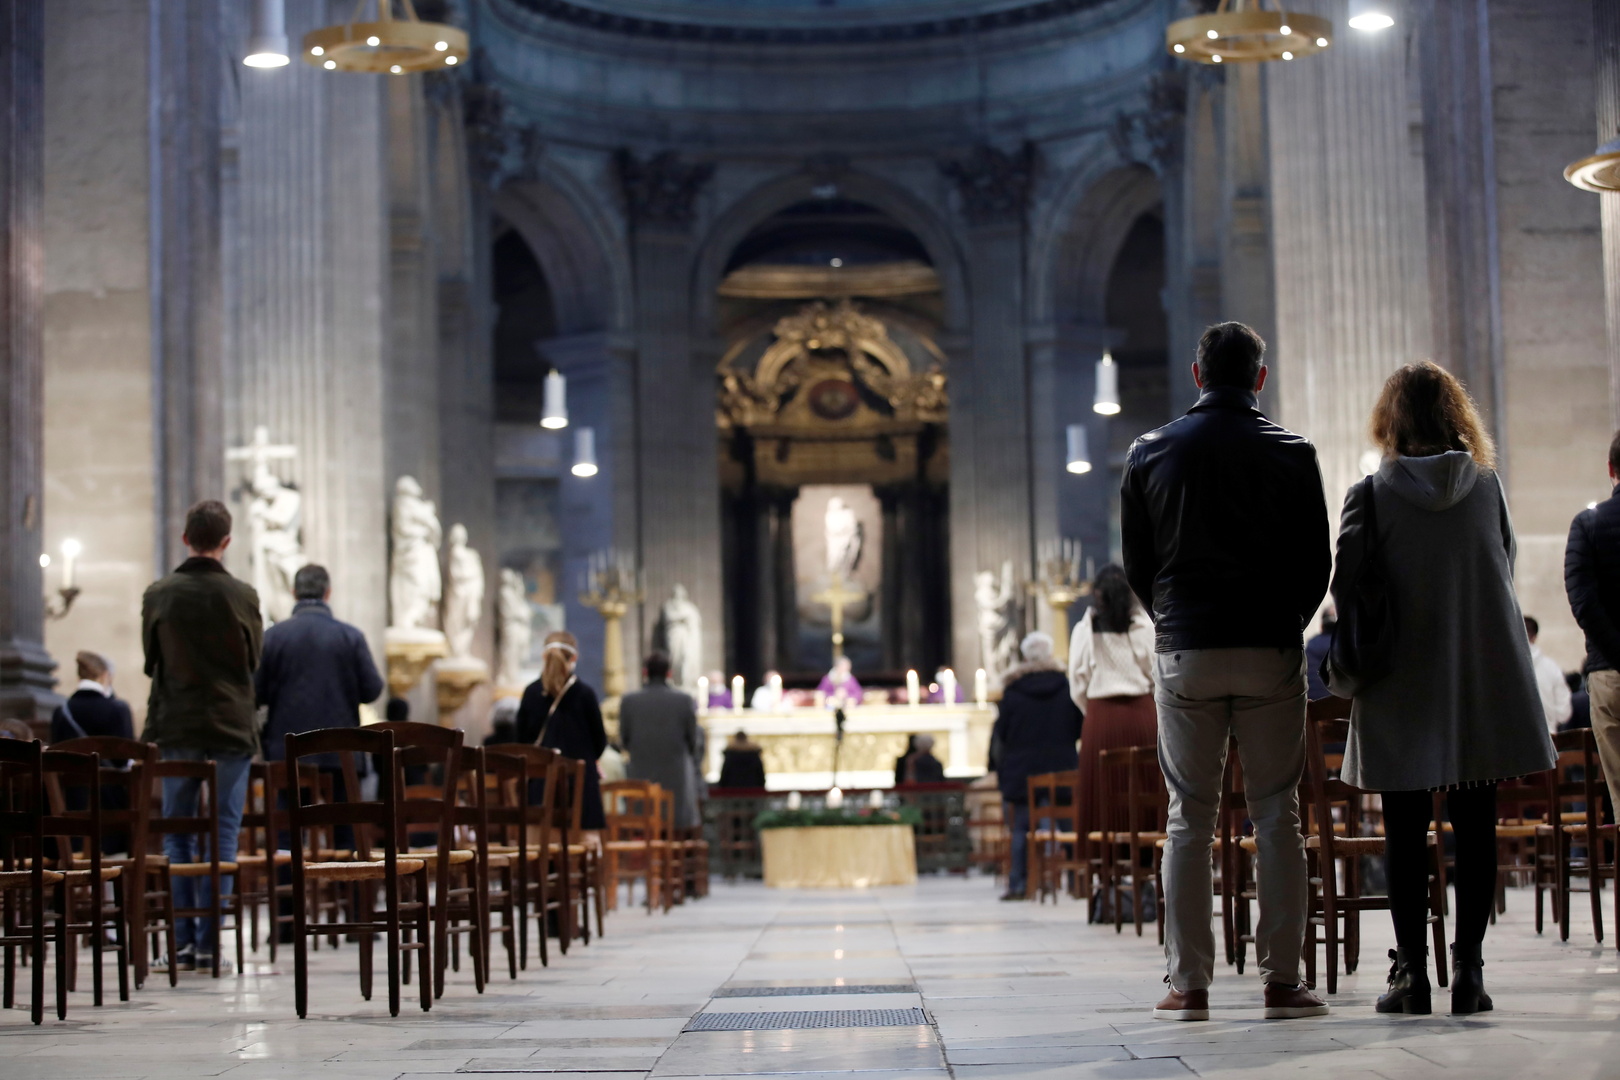 لجنة: نحو 3.2 ألف مشتبه بهم بالاعتداء الجنسي على الأطفال في فرنسا منذ عام 1950 مرتبطون بالكنيسة